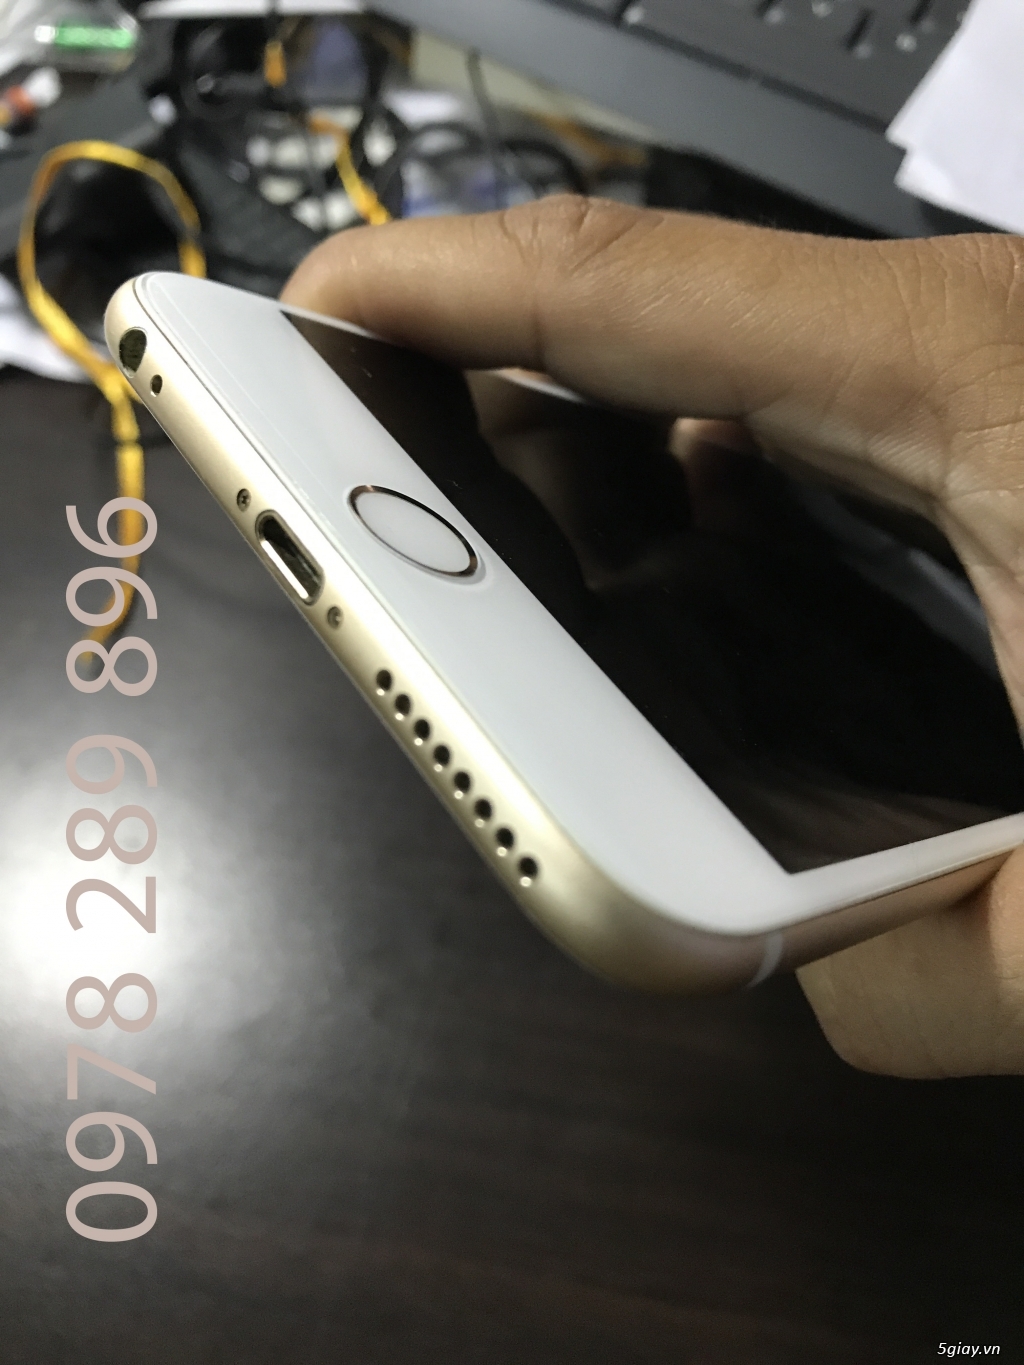 Iphone 6 Plus Gold 16GB 99%, hàng xách tay giá 6.2 triệu